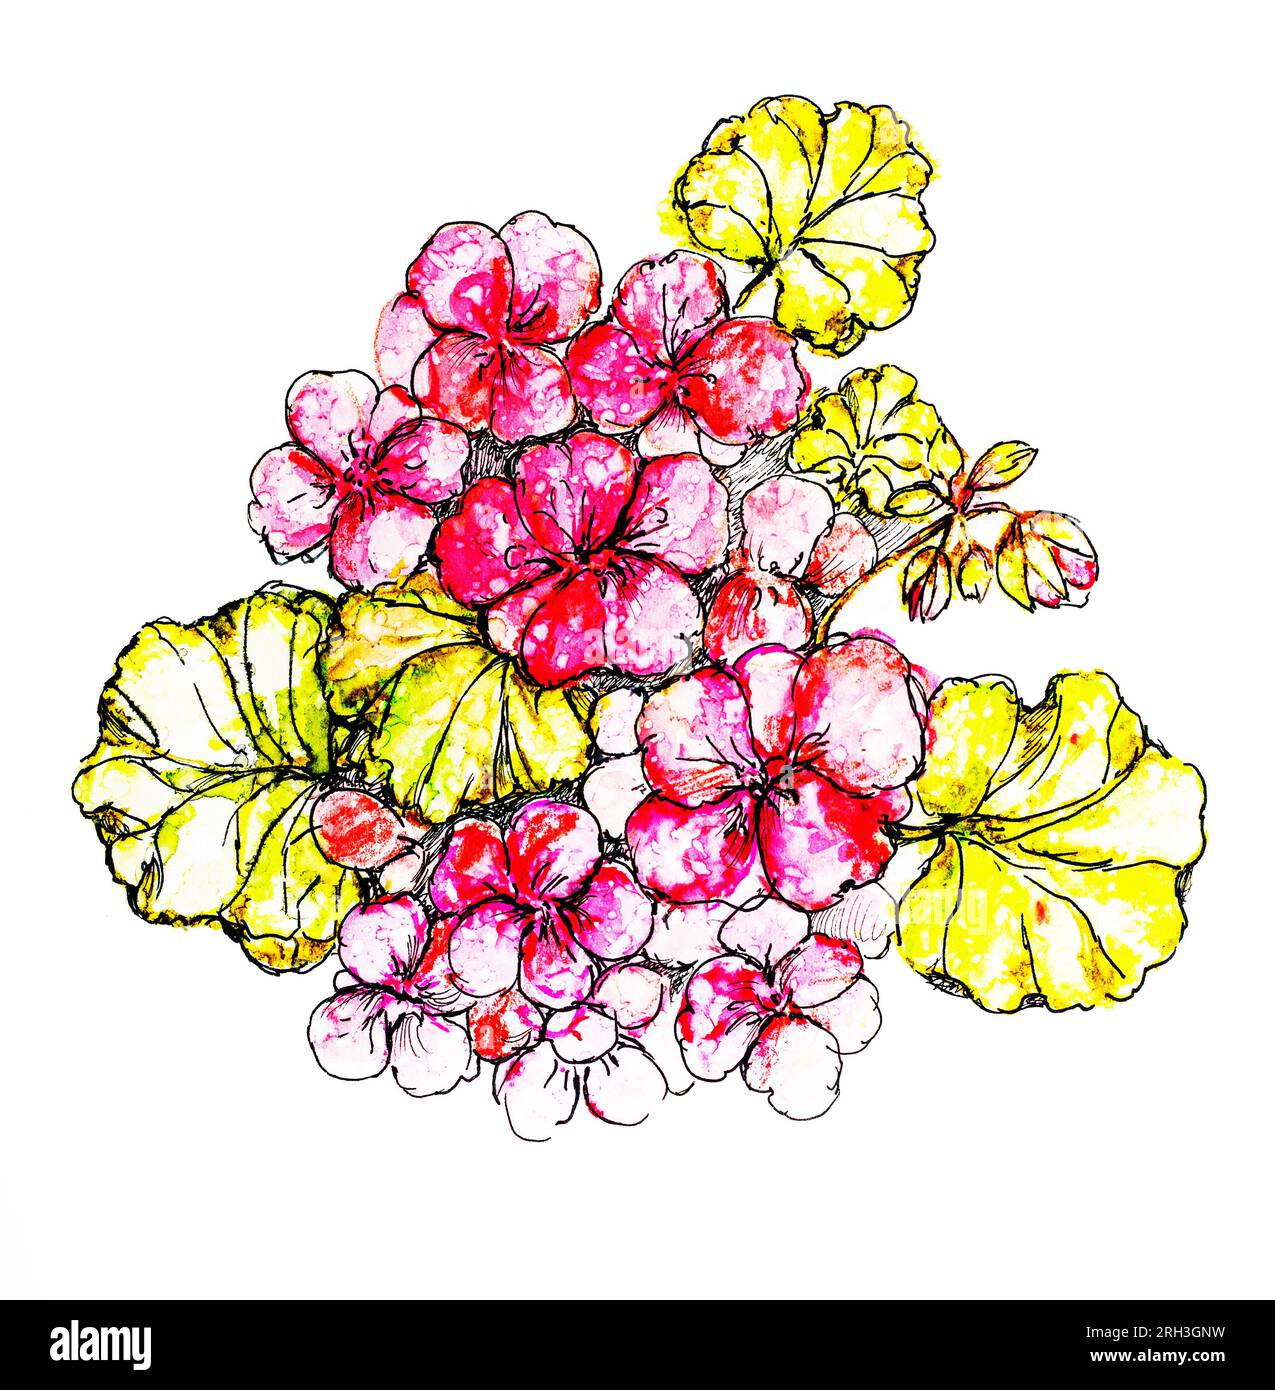 acquerello illustrazione a mano rosso pelargonium fiori con foglie. Crescere e prendersi cura dei fiori Foto Stock